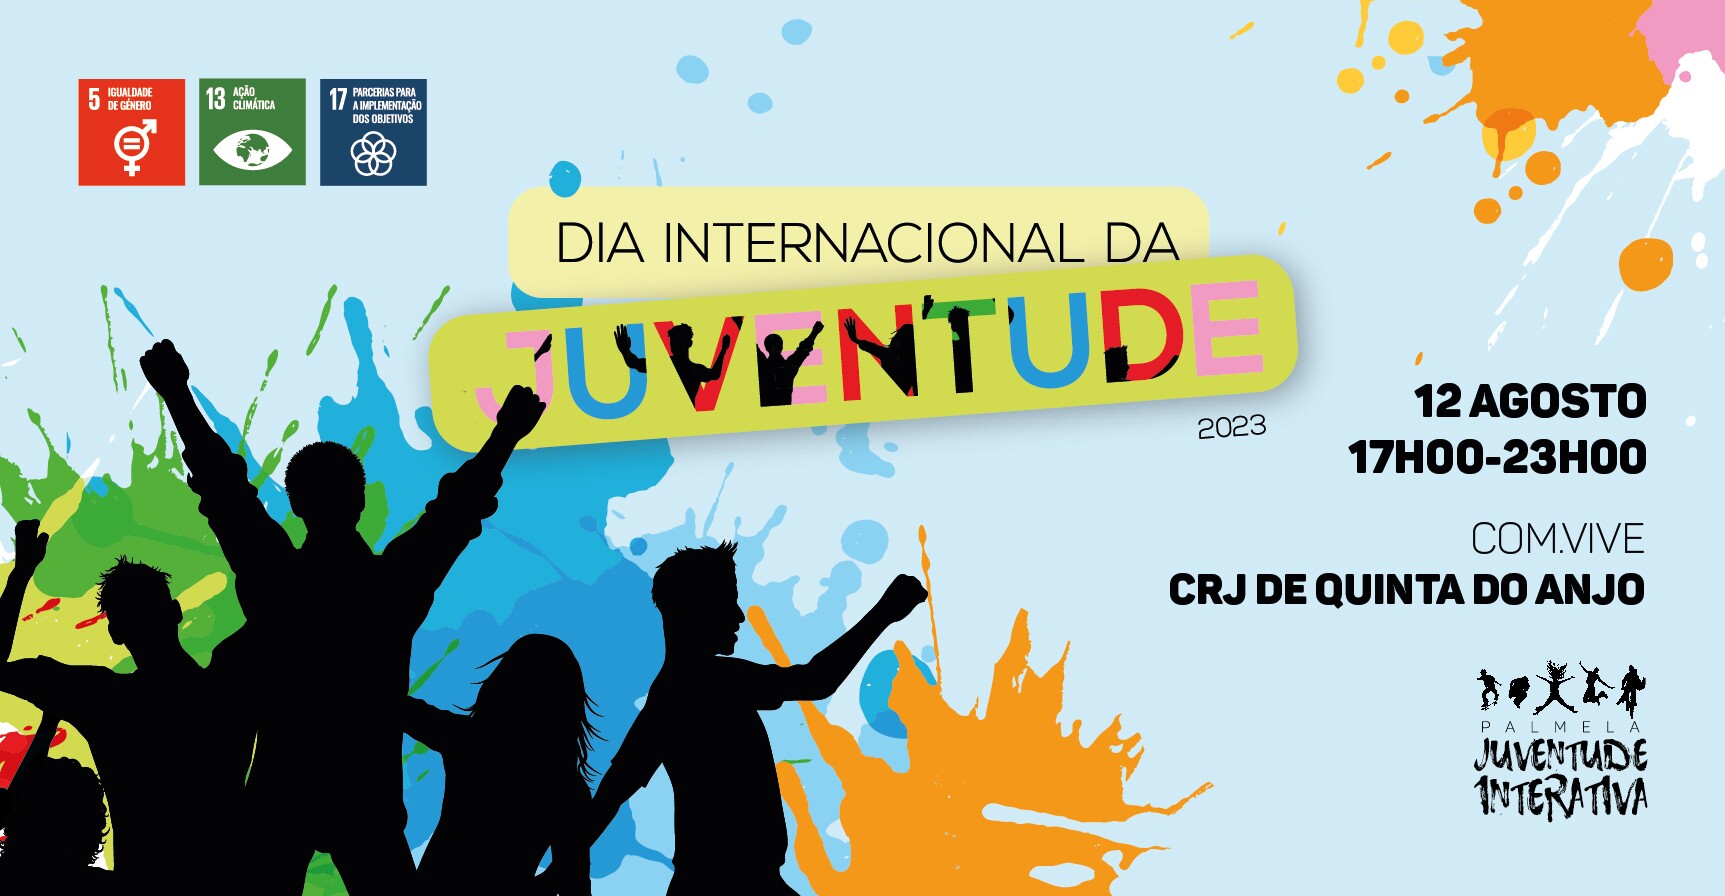 Dia da Juventude com desporto, palestras, música e convívio - participa!